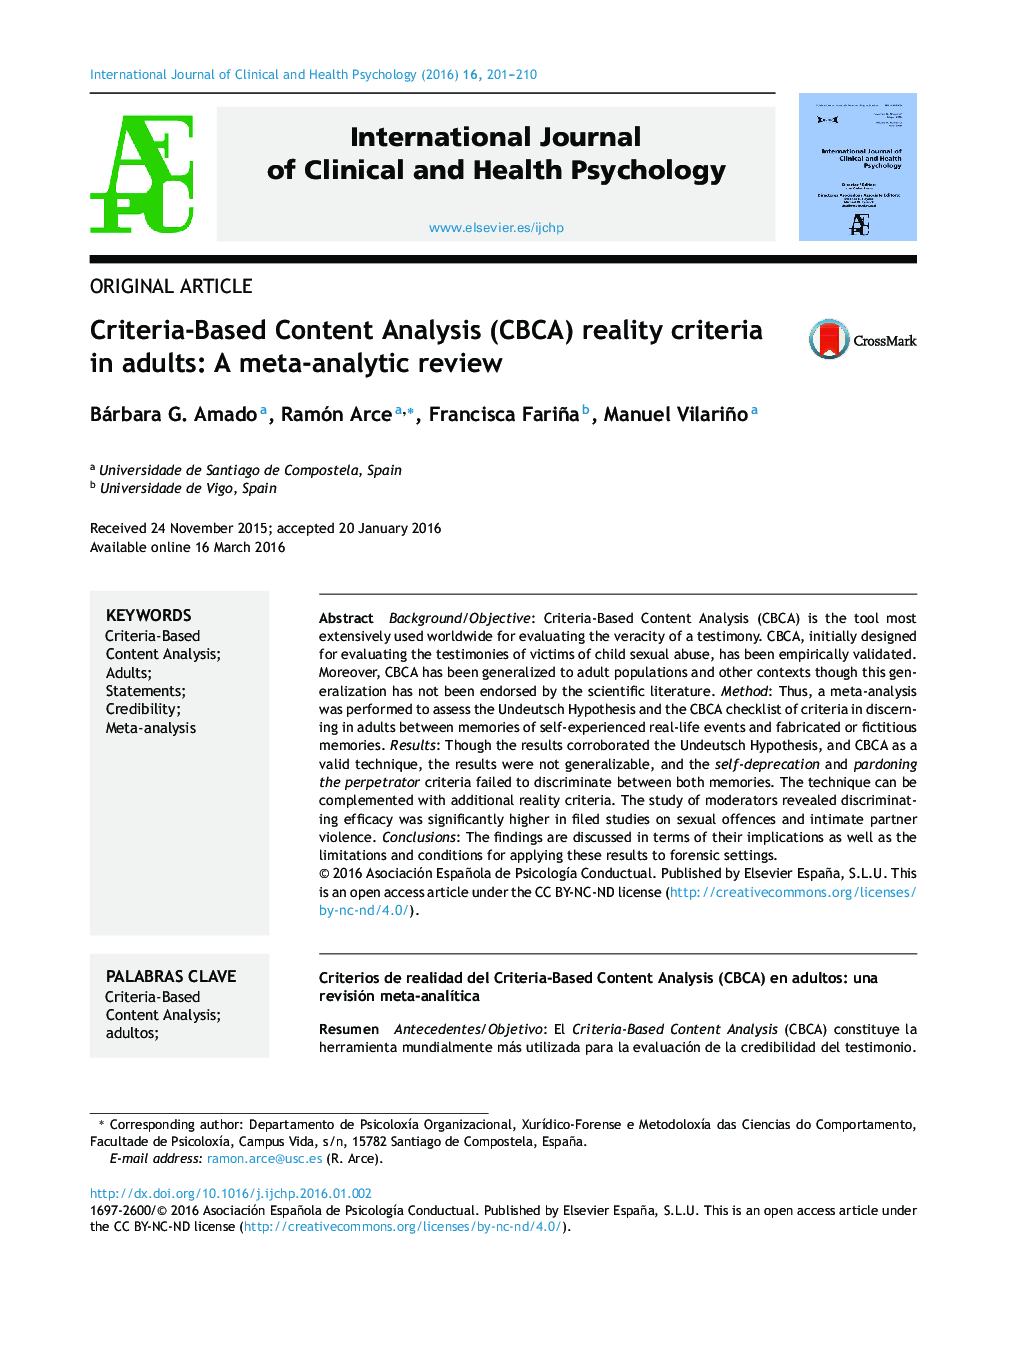 معیارهای واقعیت تحلیل محتوا مبتنی بر معیار (CBCA) در بزرگسالان: مروری فراتحلیلی